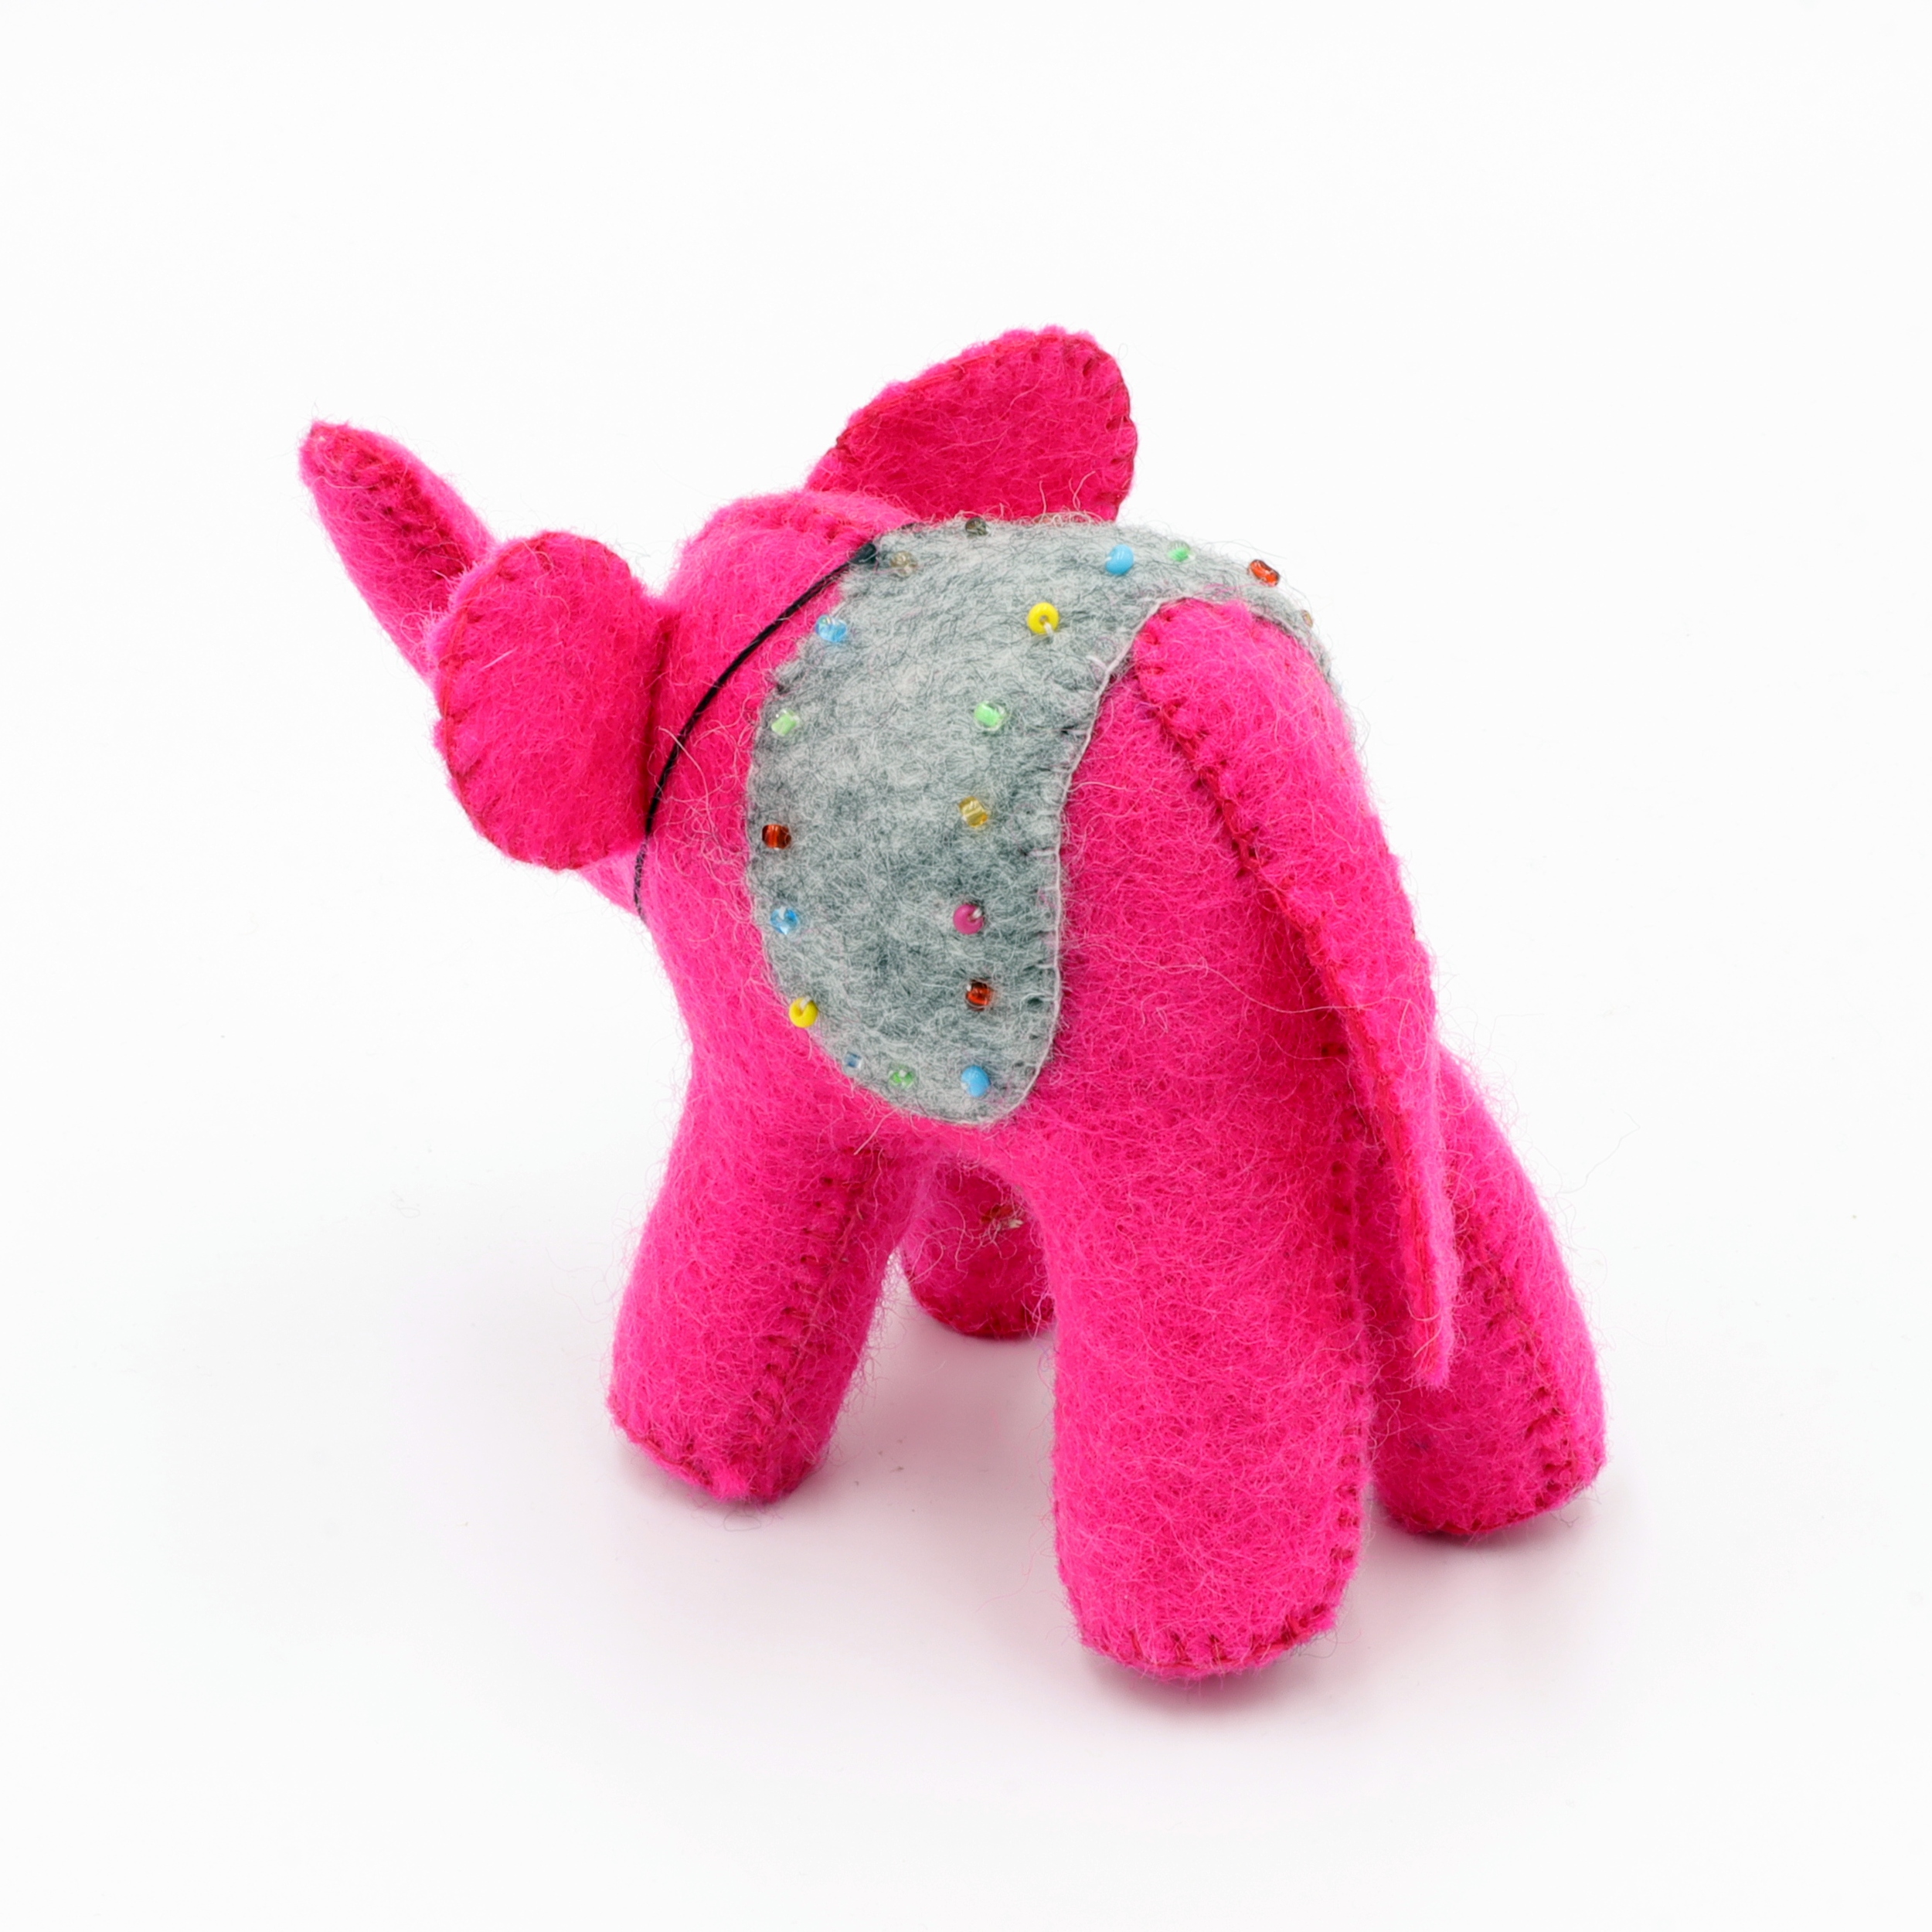 Elefant aus Filz mit Glöckchen - Der kleine Pinke mit der Decke